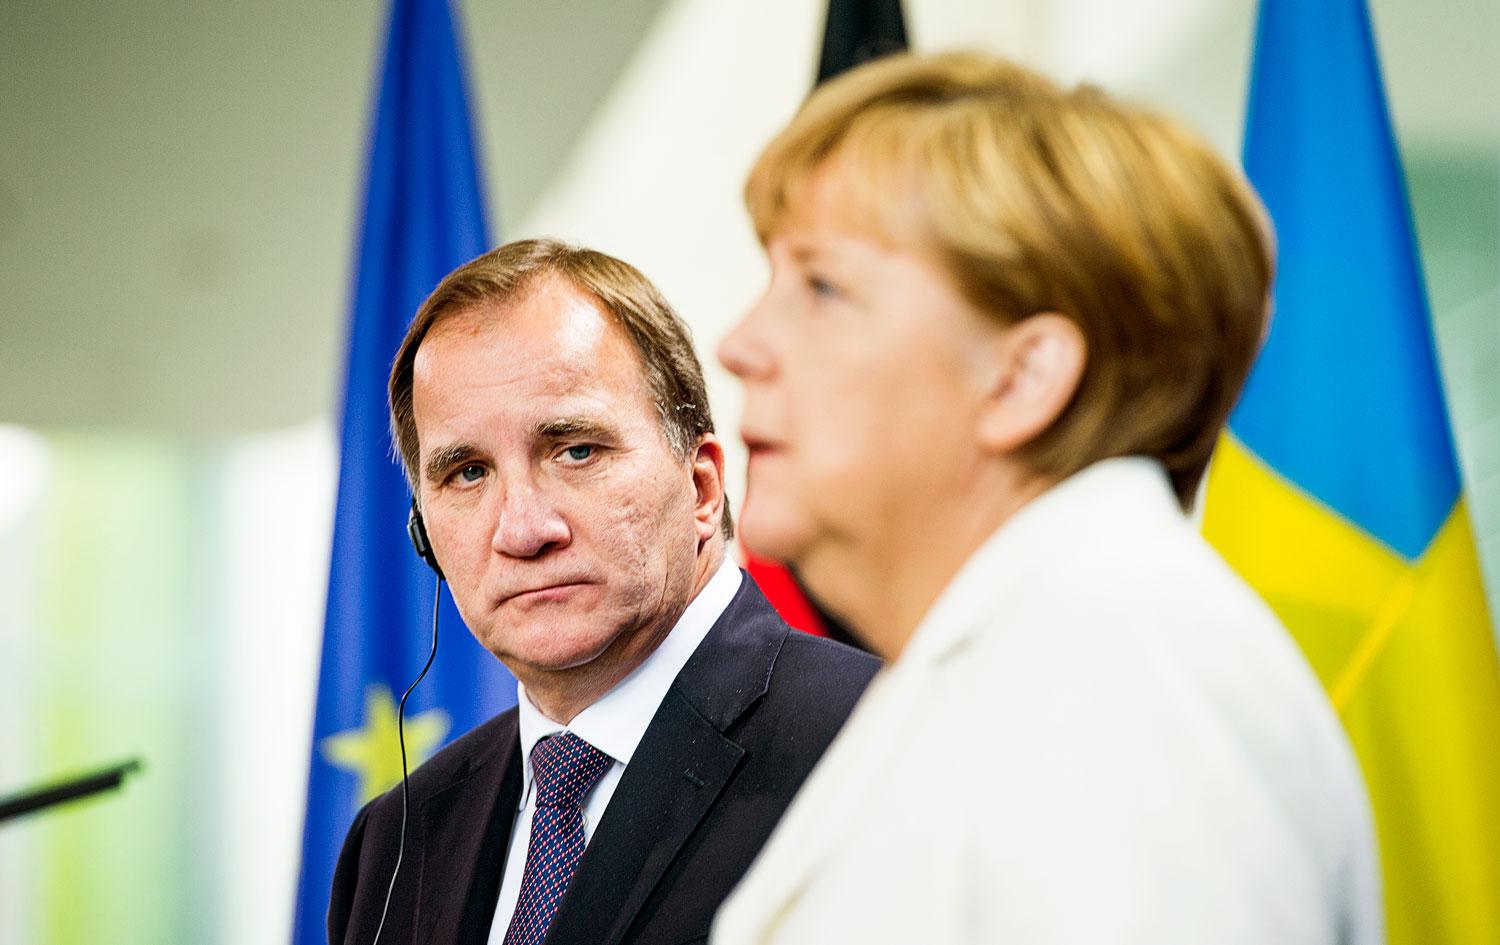 I Tyskland är Merkel under starkt tryck. Hennes systerparti CSU hotar dra regeringen inför författningsdomstolen. I Sverige finns ingen författningsdomstol, som kan pröva statsminister Löfvens ansvar, skriver debattören.